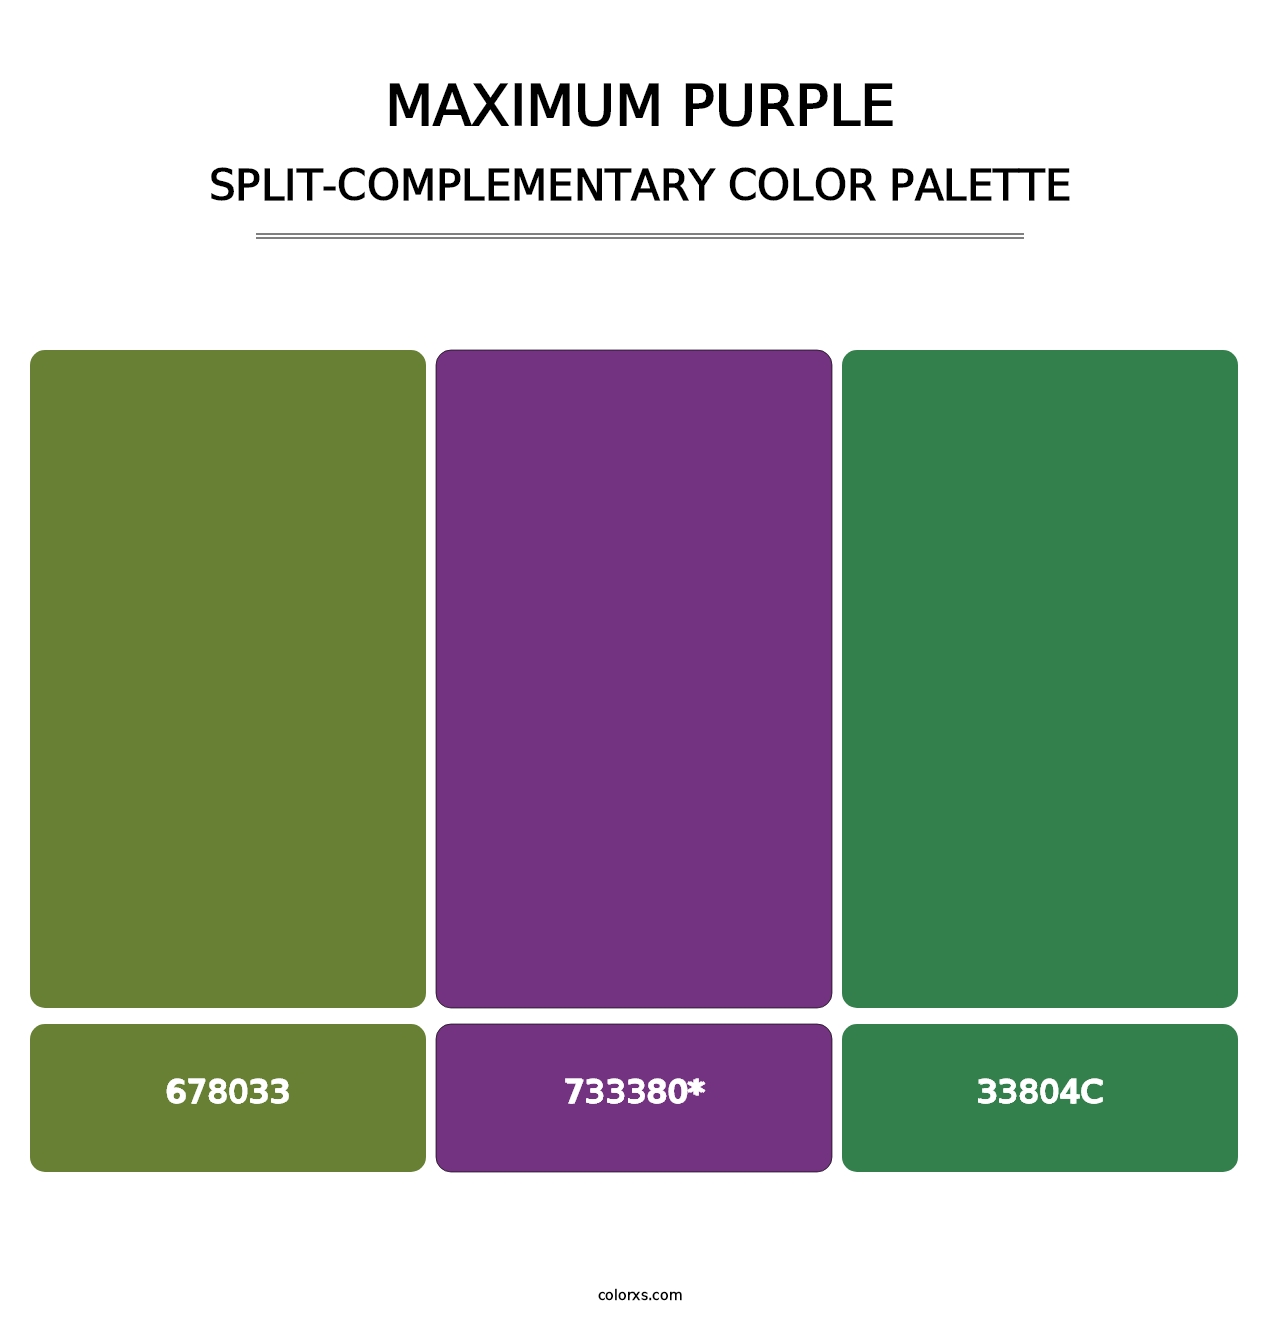 Maximum Purple - Split-Complementary Color Palette